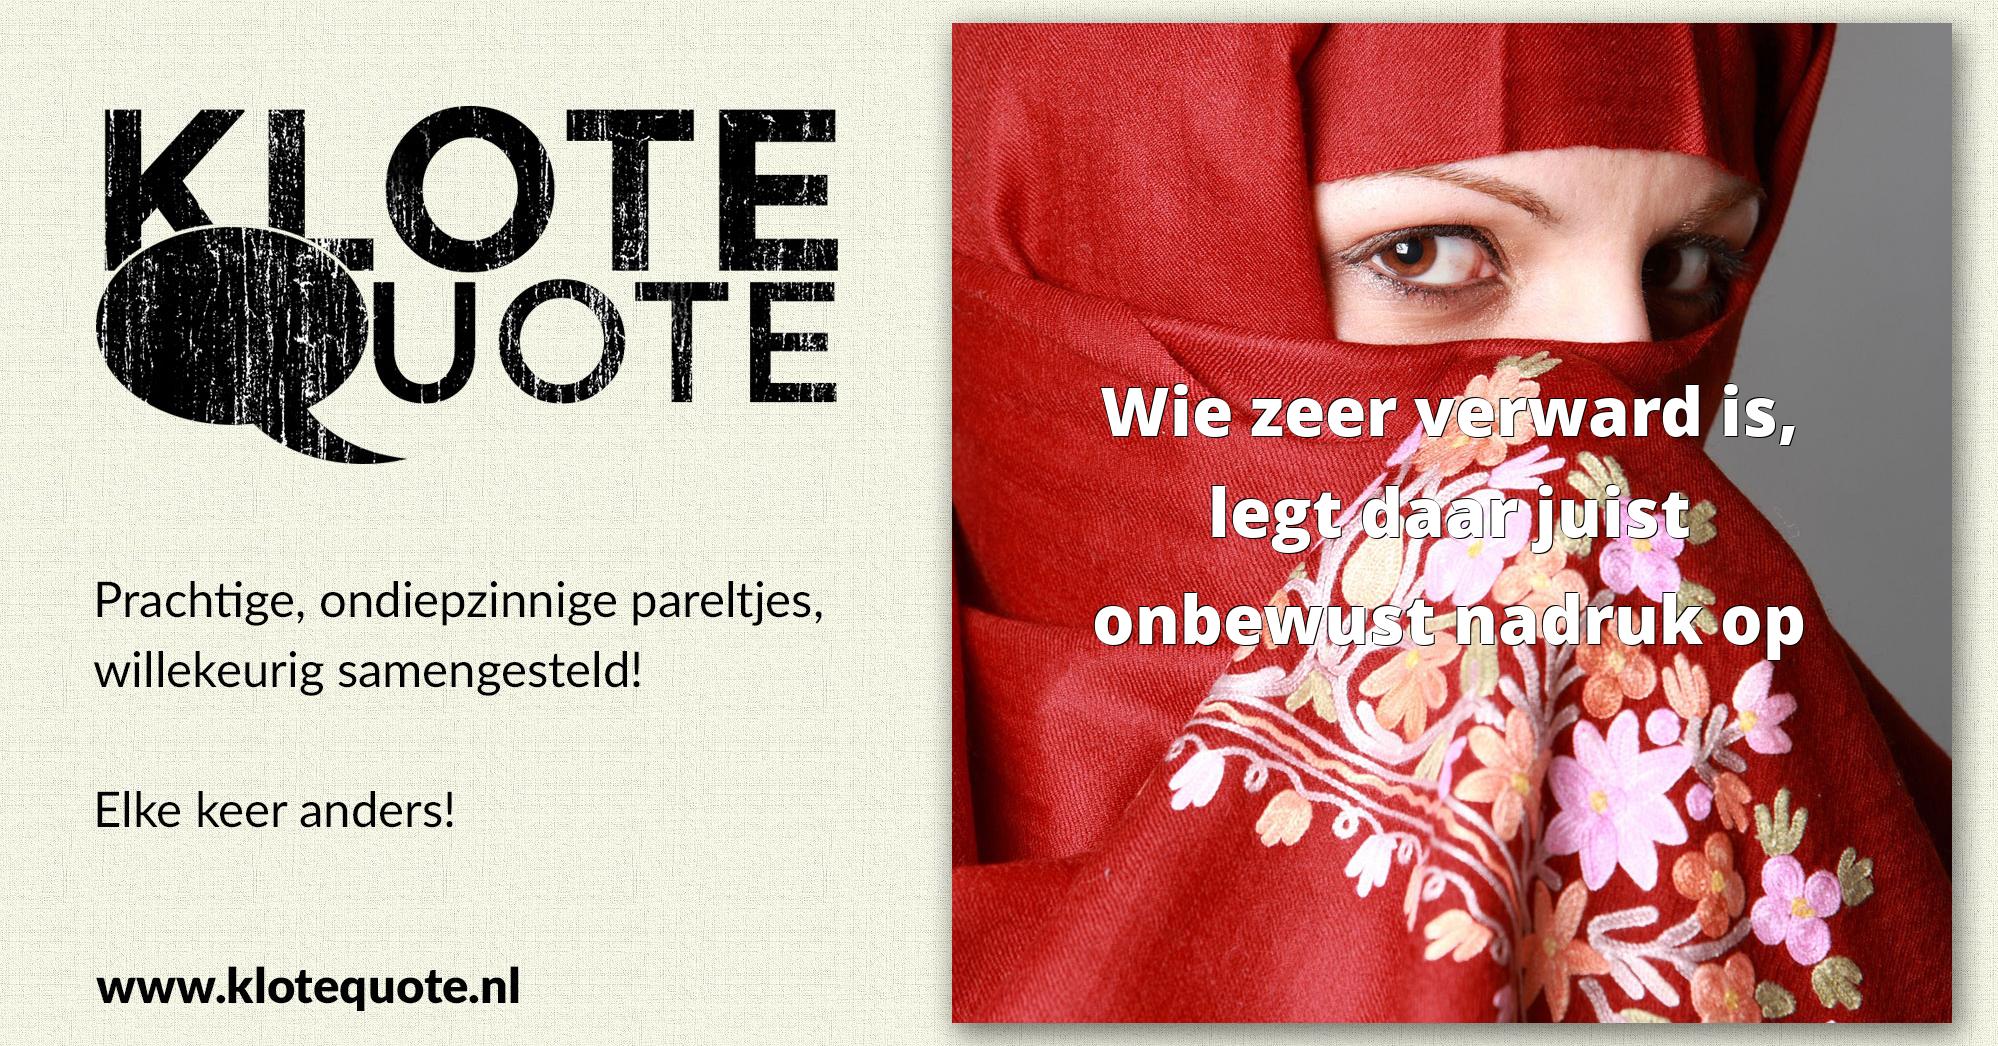 (c) Klotequote.nl